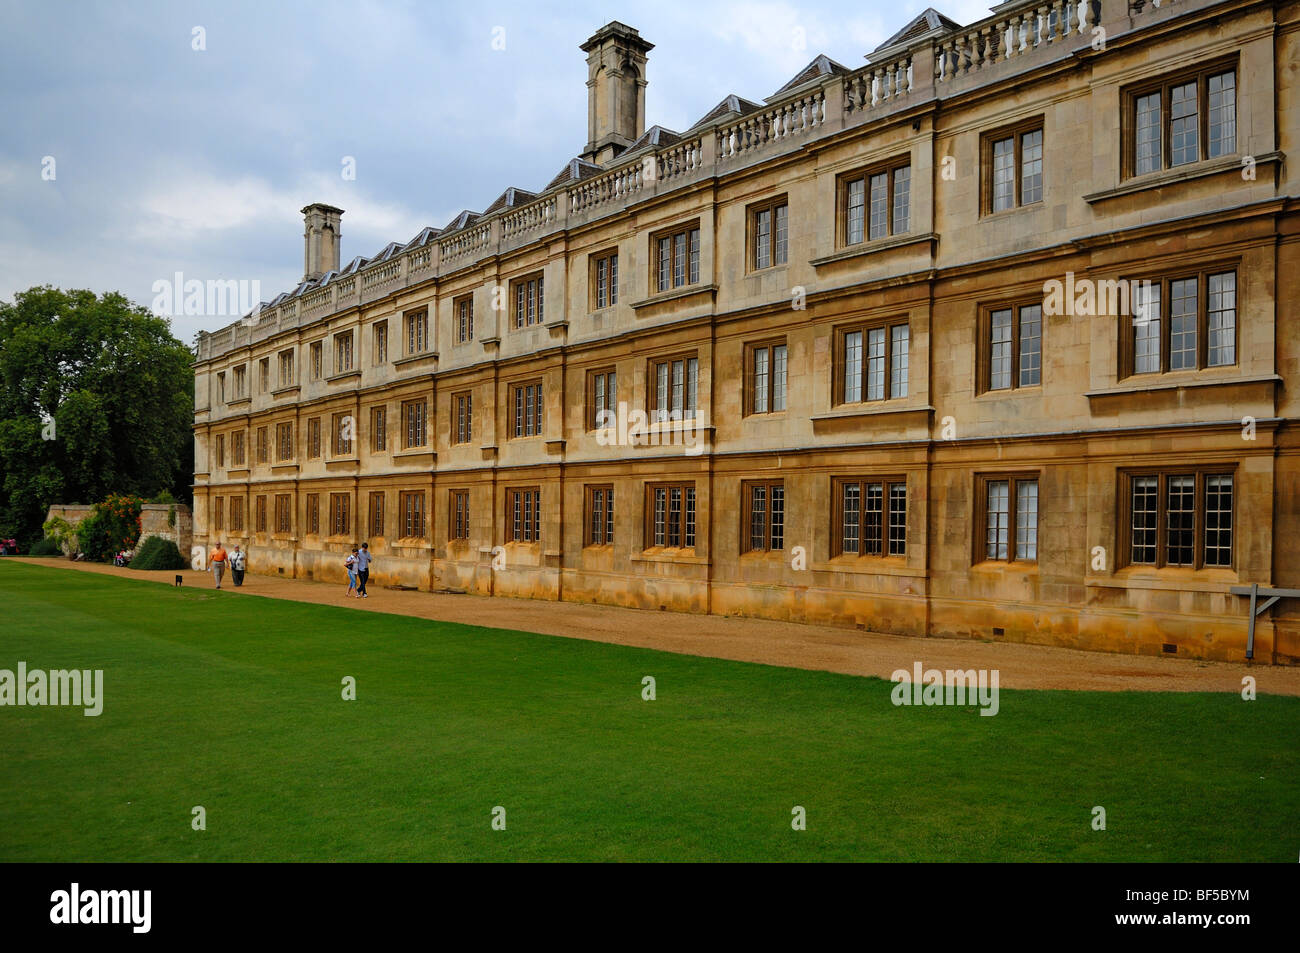 Vue partielle de la "King's College", fondée en 1441 par le Roi Henry VI., King's Parade, Cambridge, Cambridgeshire, Angleterre Banque D'Images